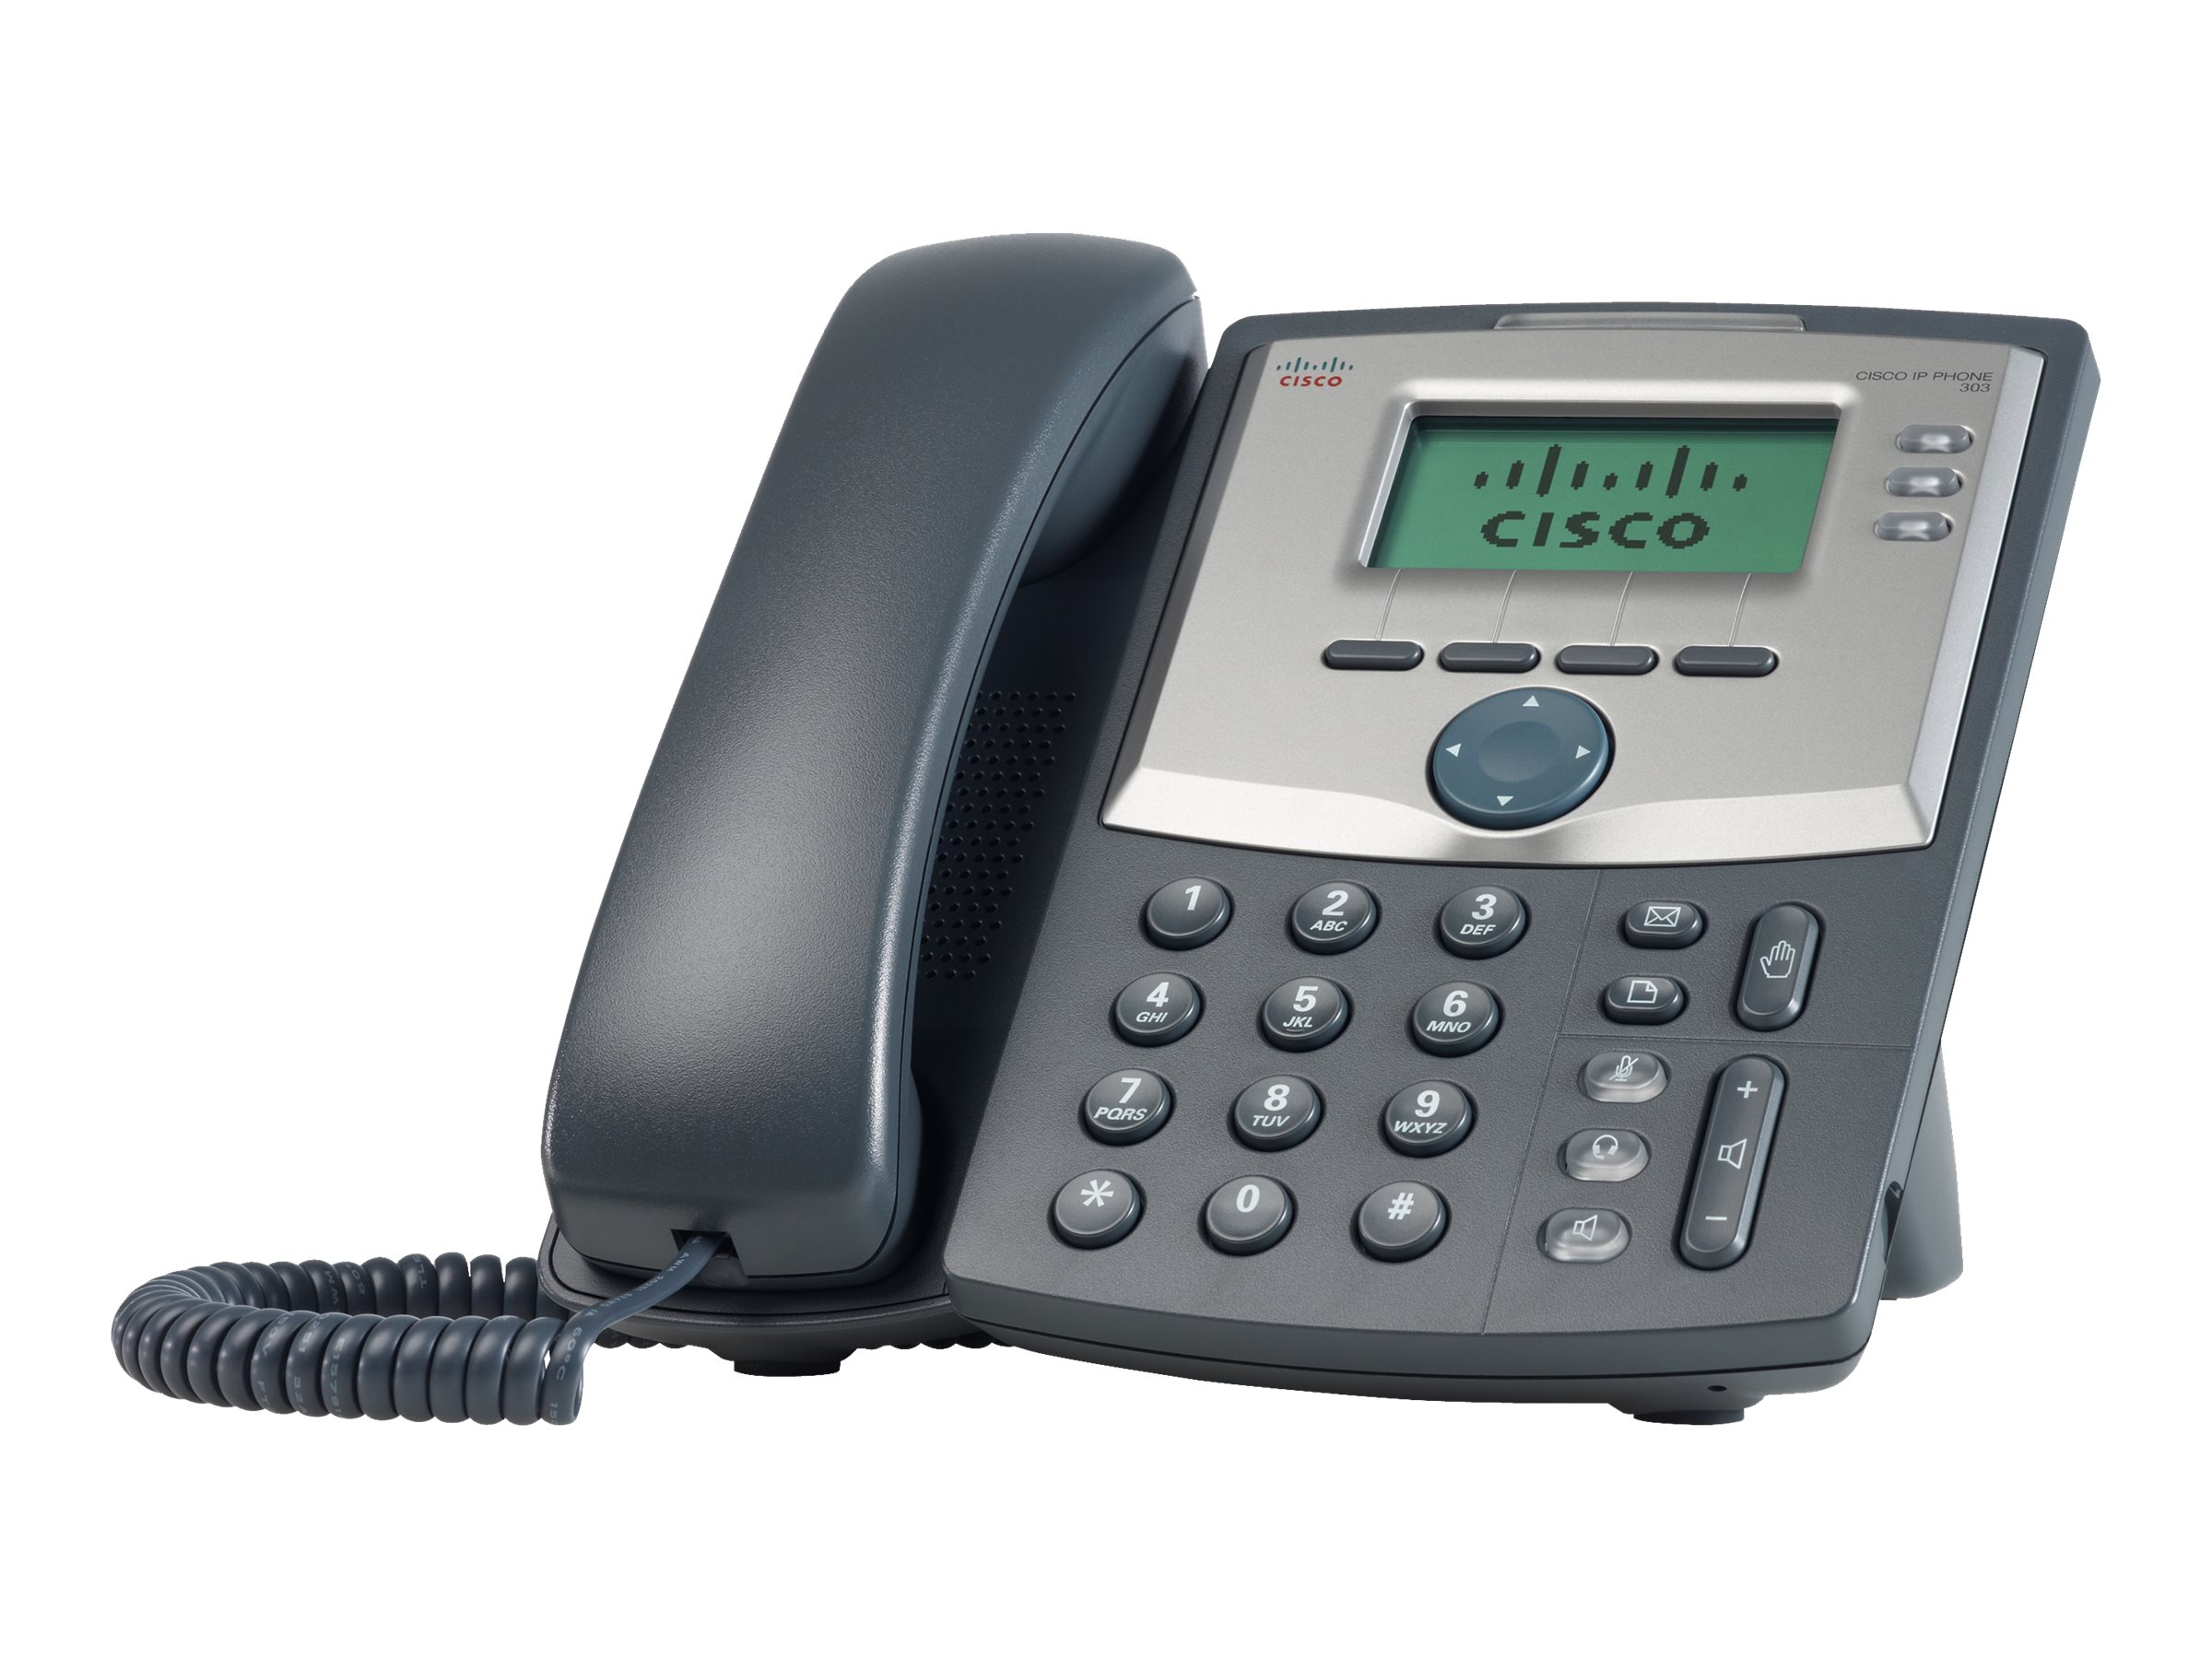 Cisco Small Business SPA 303 - Téléphone VoIP - (conférence) à trois capacité d'appel - SIP, SIP v2, SPCP - 3 lignes - remanufacturé - SPA303-R2-RF - Téléphones VoIP